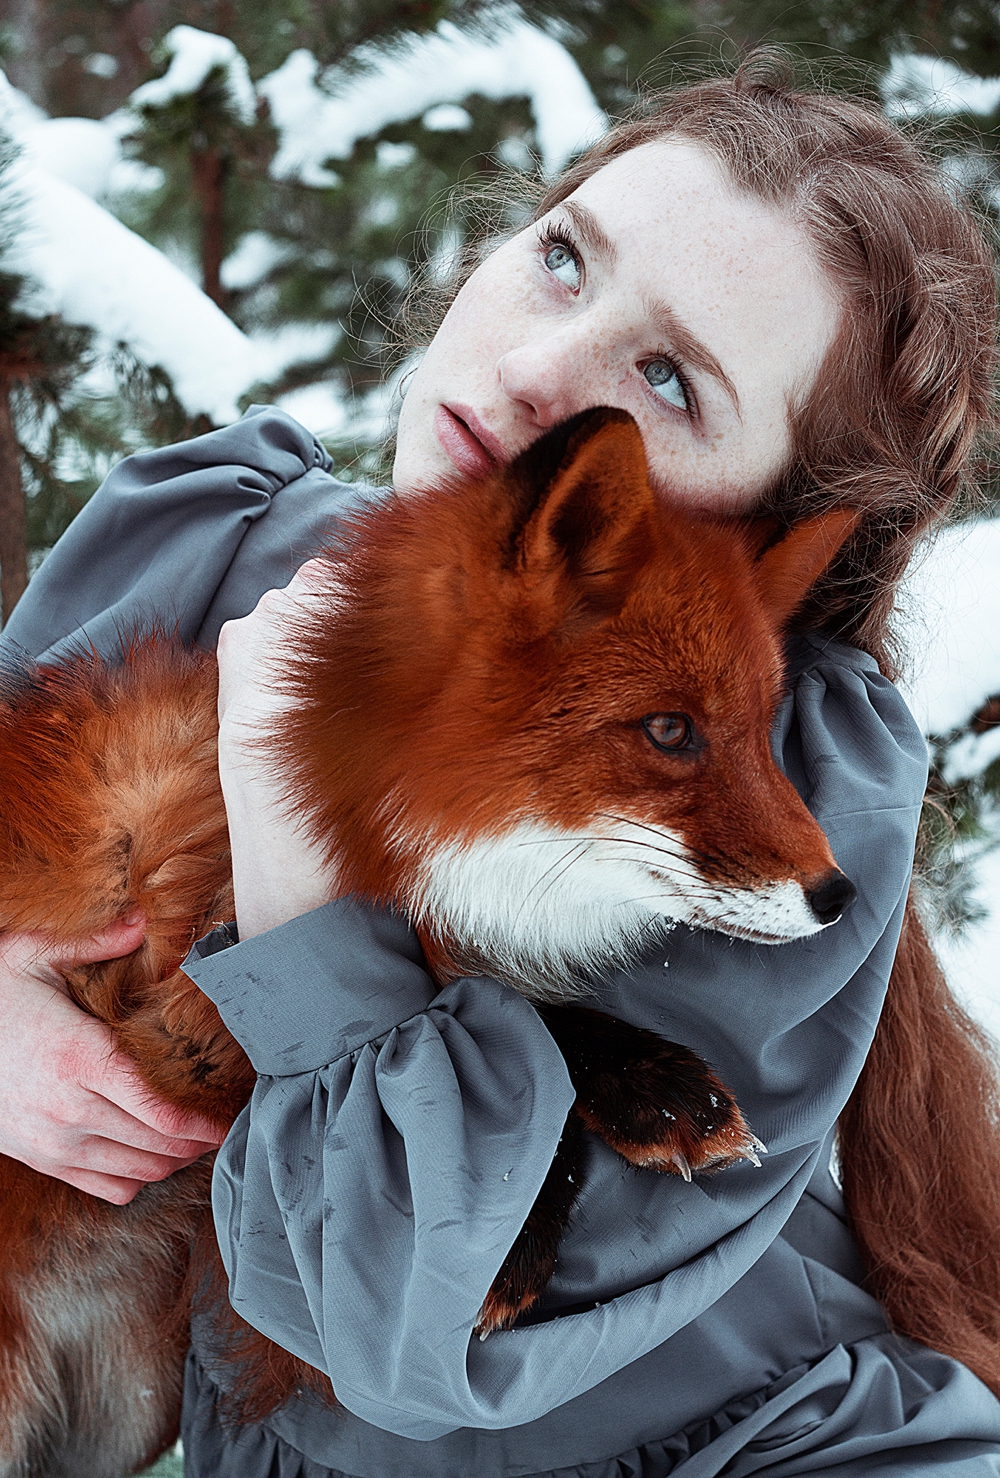 alexandra-bochkareva-fairytale-portraits-of-redheads_0009